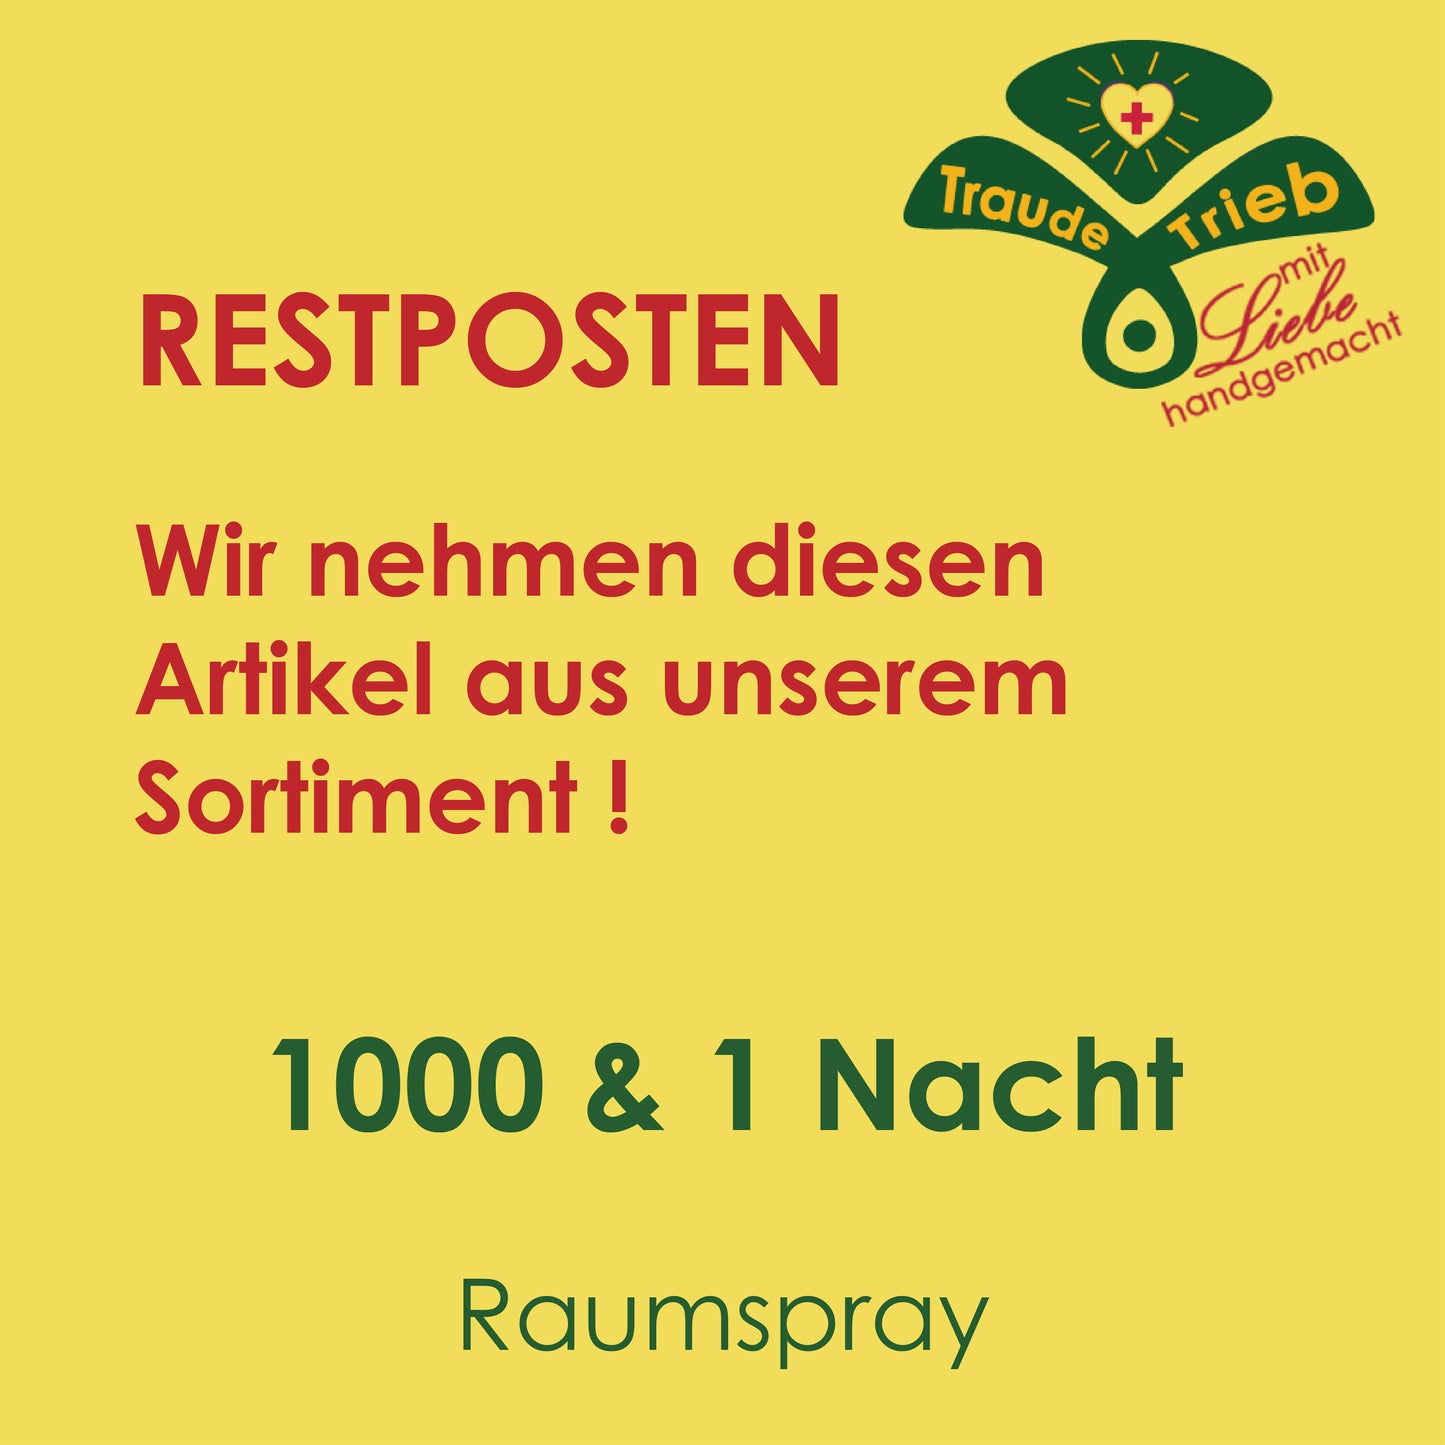 RESTPOSTEN 1000 & 1 Nacht-Raumspray